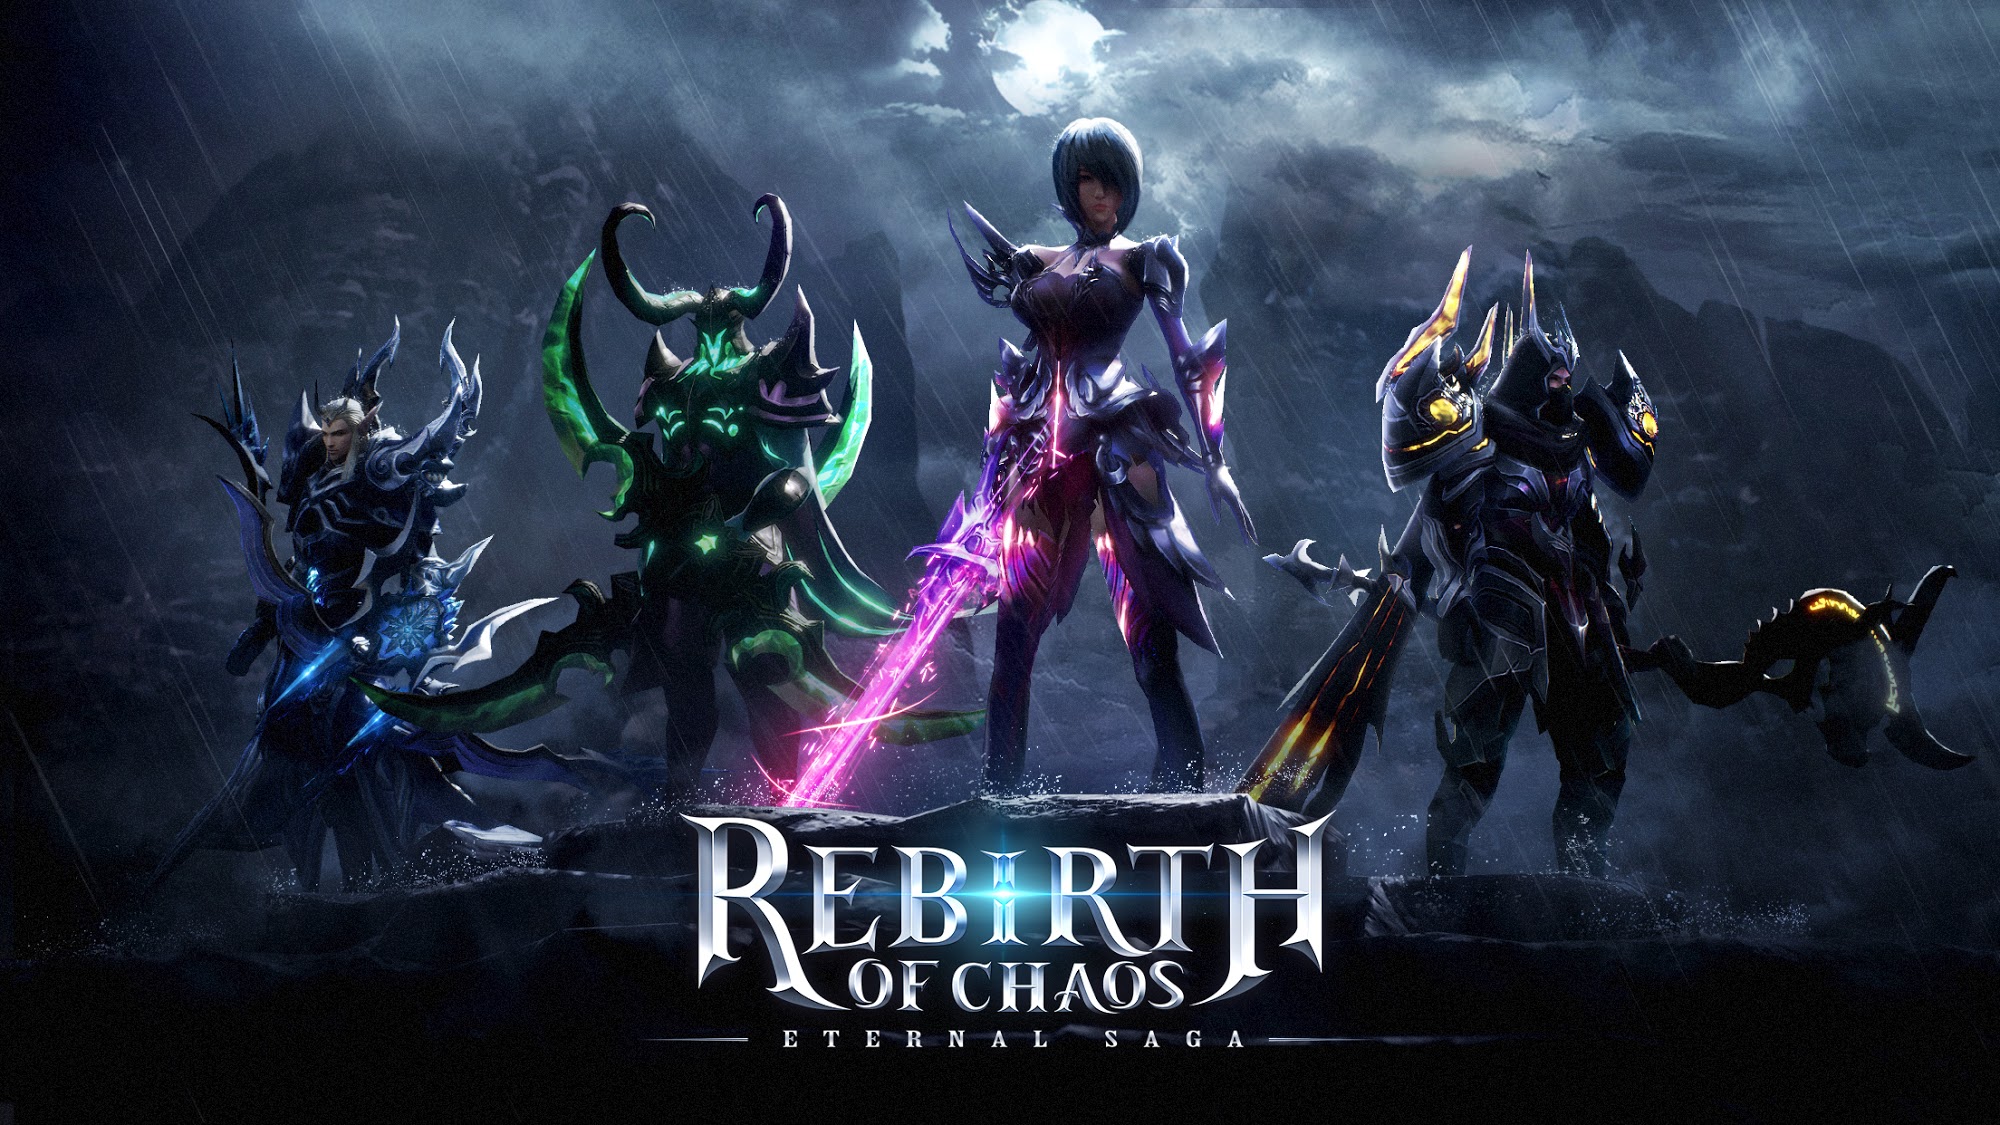 Ladda ner Rebirth of Chaos: Eternal saga: Android PvP spel till mobilen och surfplatta.